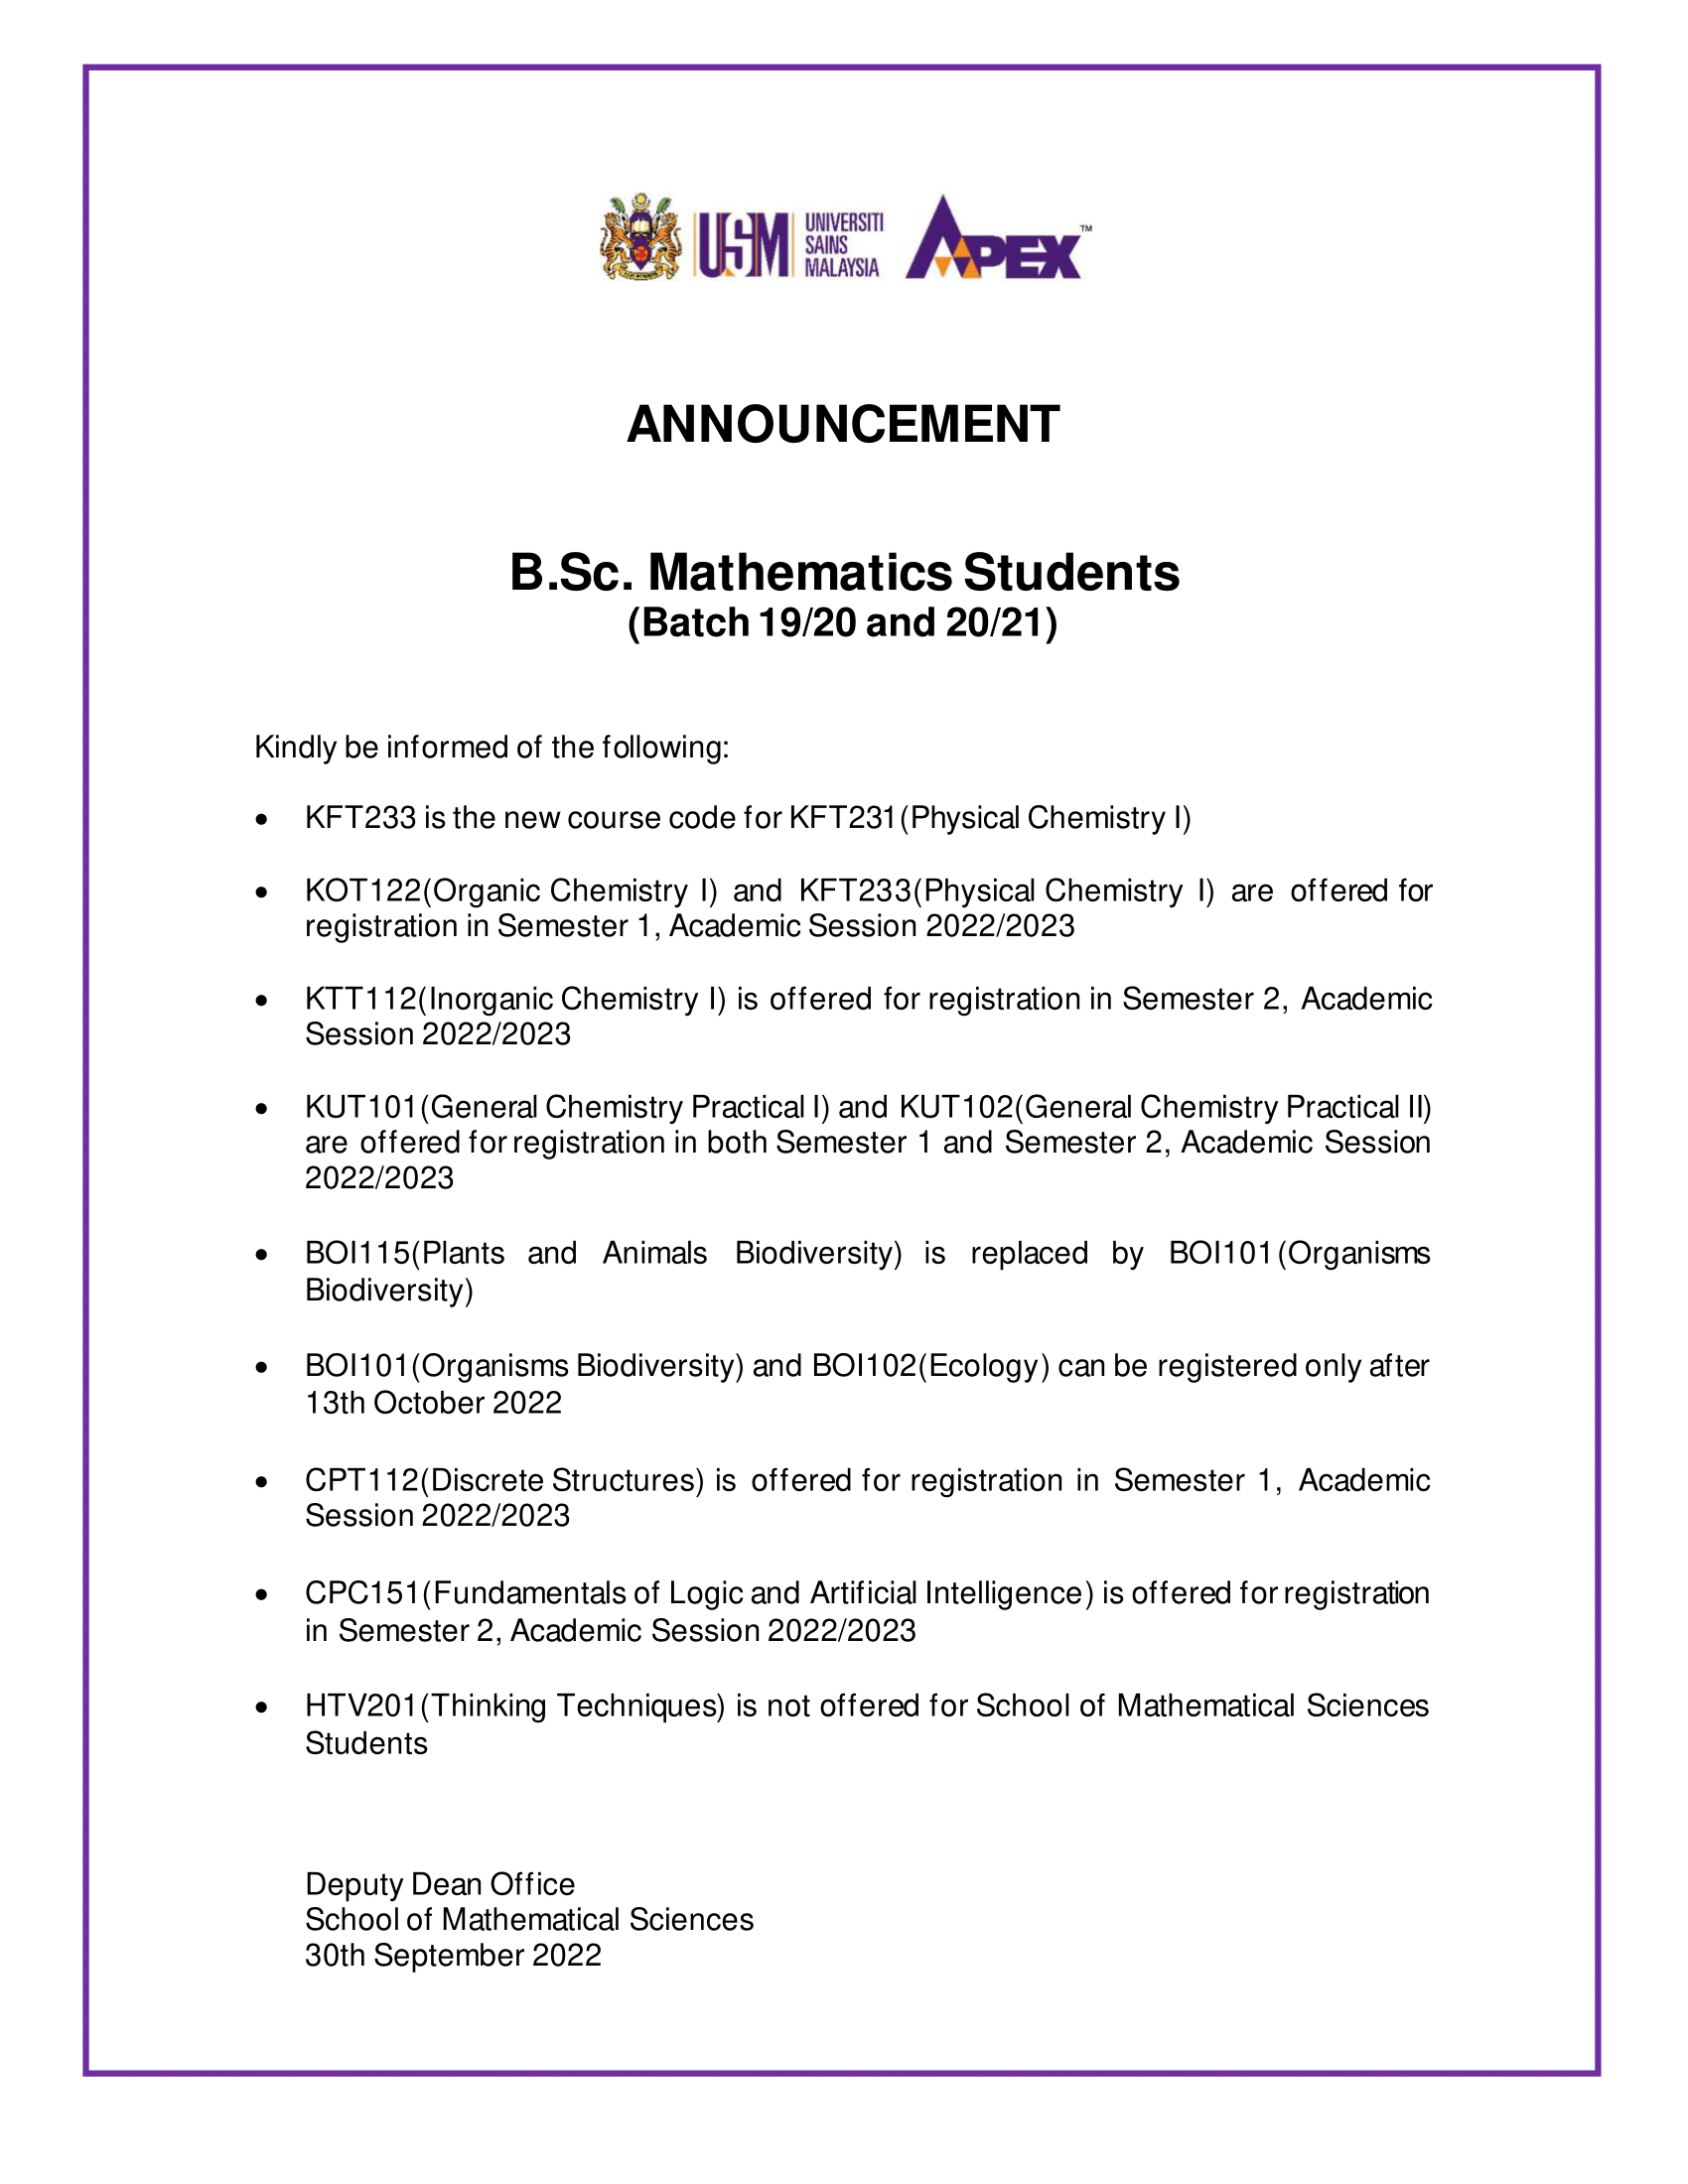 Science Courses Announcement 1